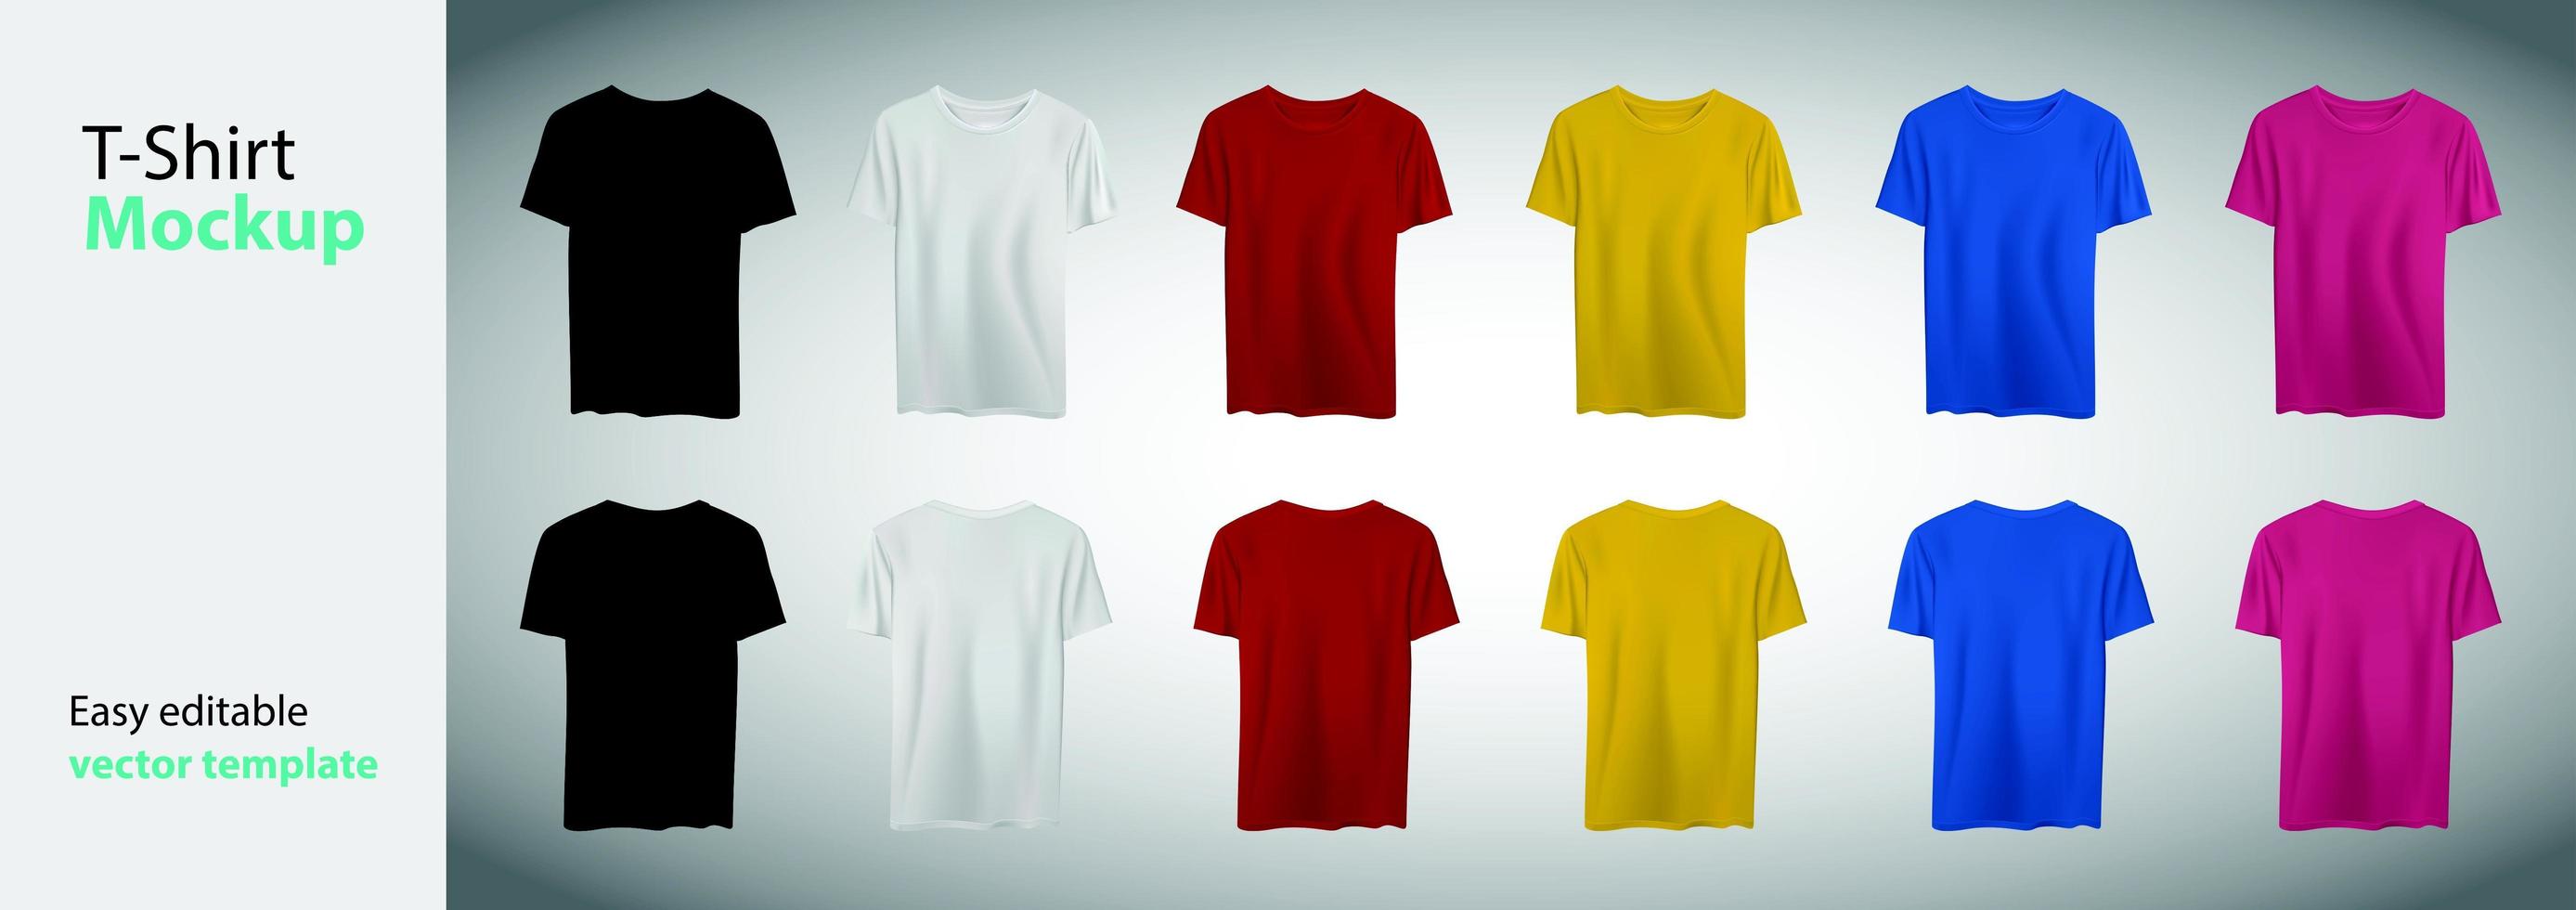 coleção de modelos de camisetas grandes de cores diferentes vetor